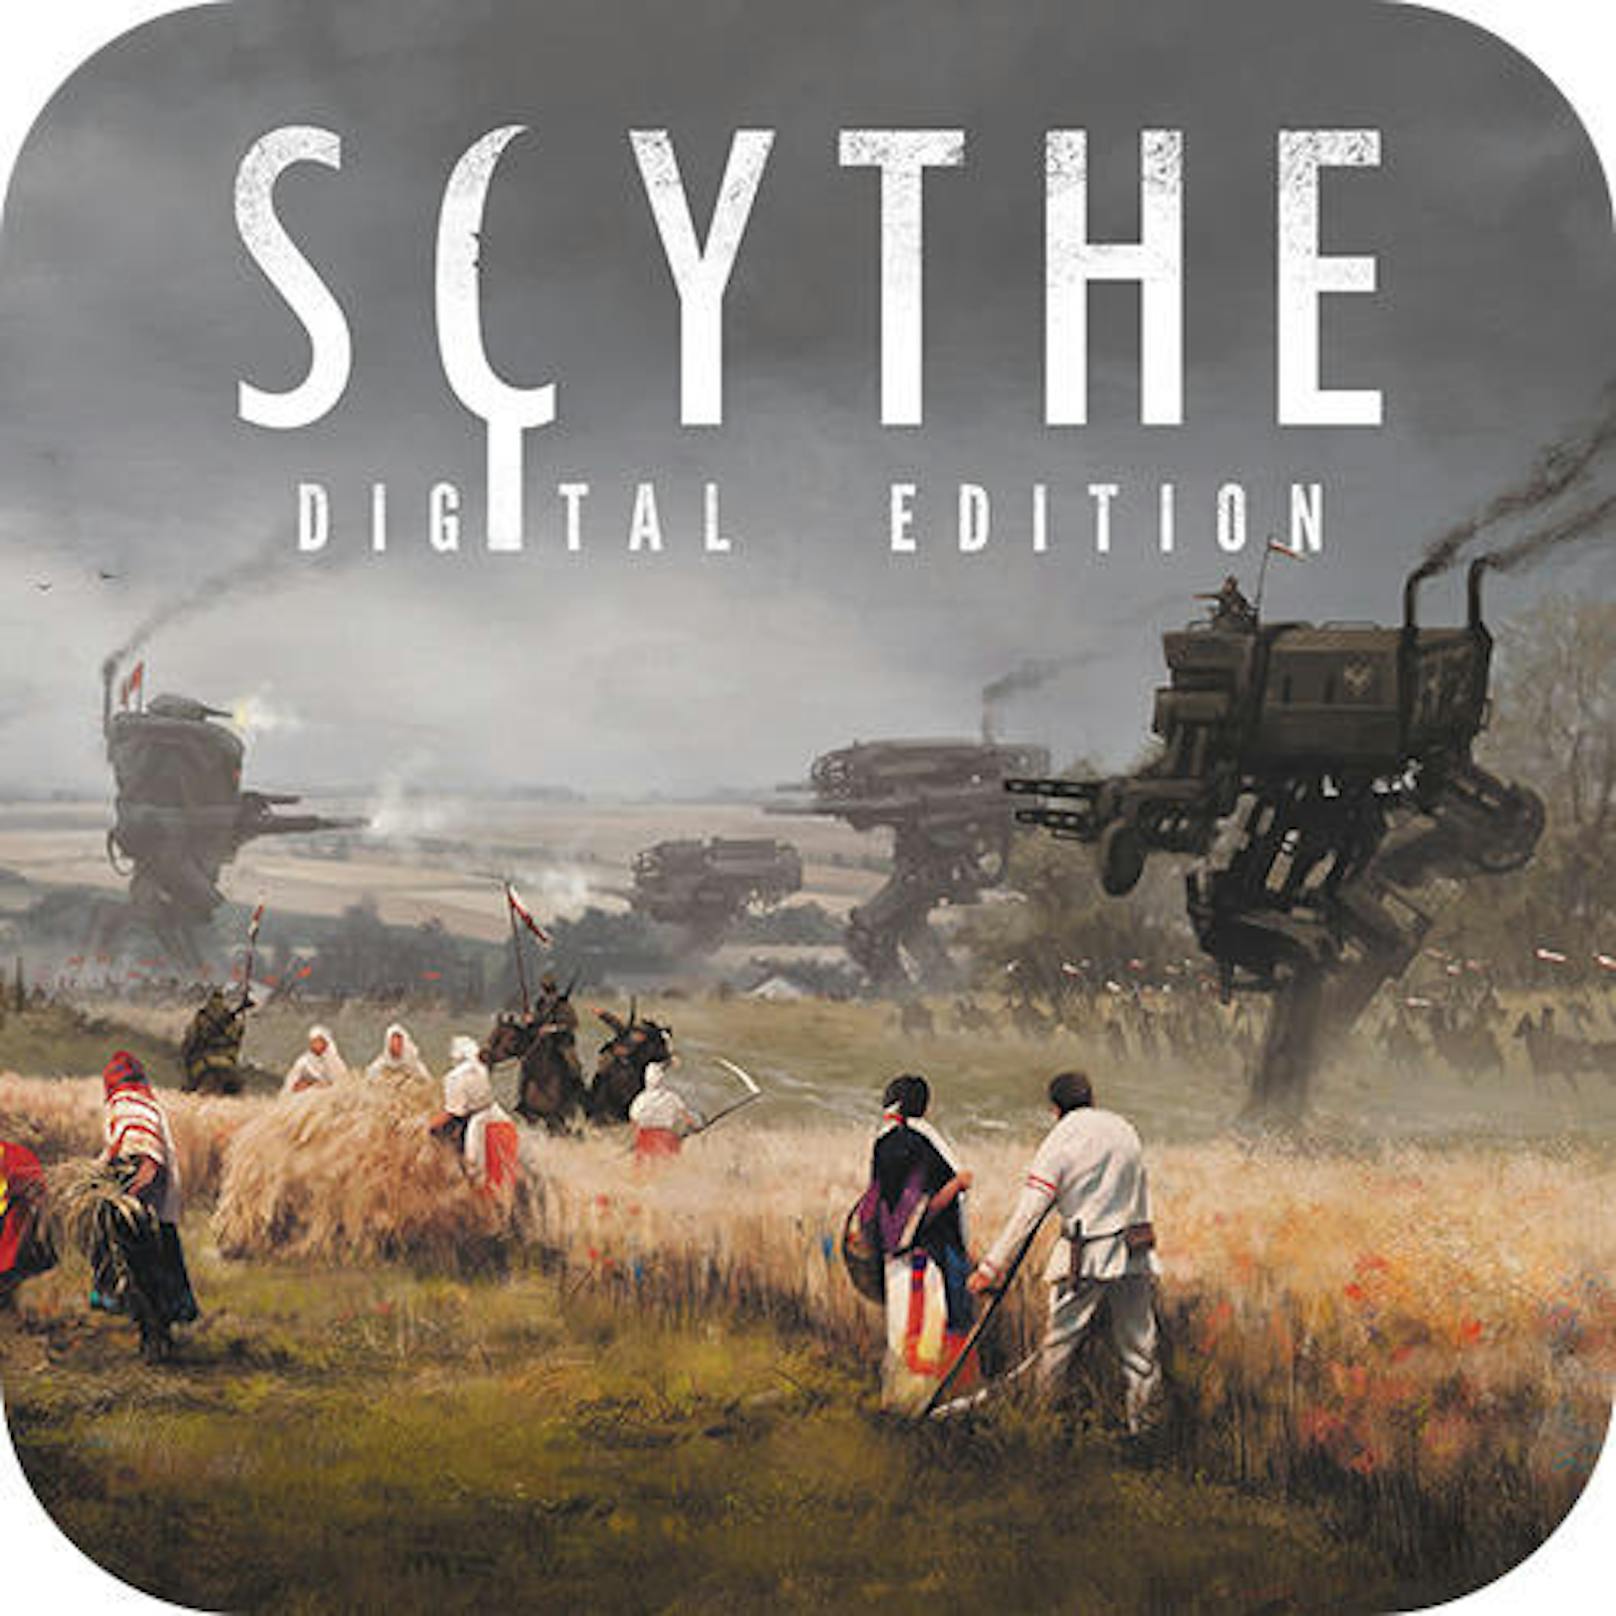 Scythe (Stonemaier Games) - PC via Steam - in diesem originellen, in einem alternativen Universum der 1920er Jahre angesiedelte Scythe dreht sich alles darum, Maschinen zu verbessern, seine Fraktion zu stärken und das Land rund um eine geheimnisvolle Fabrik an sich zu reißen.